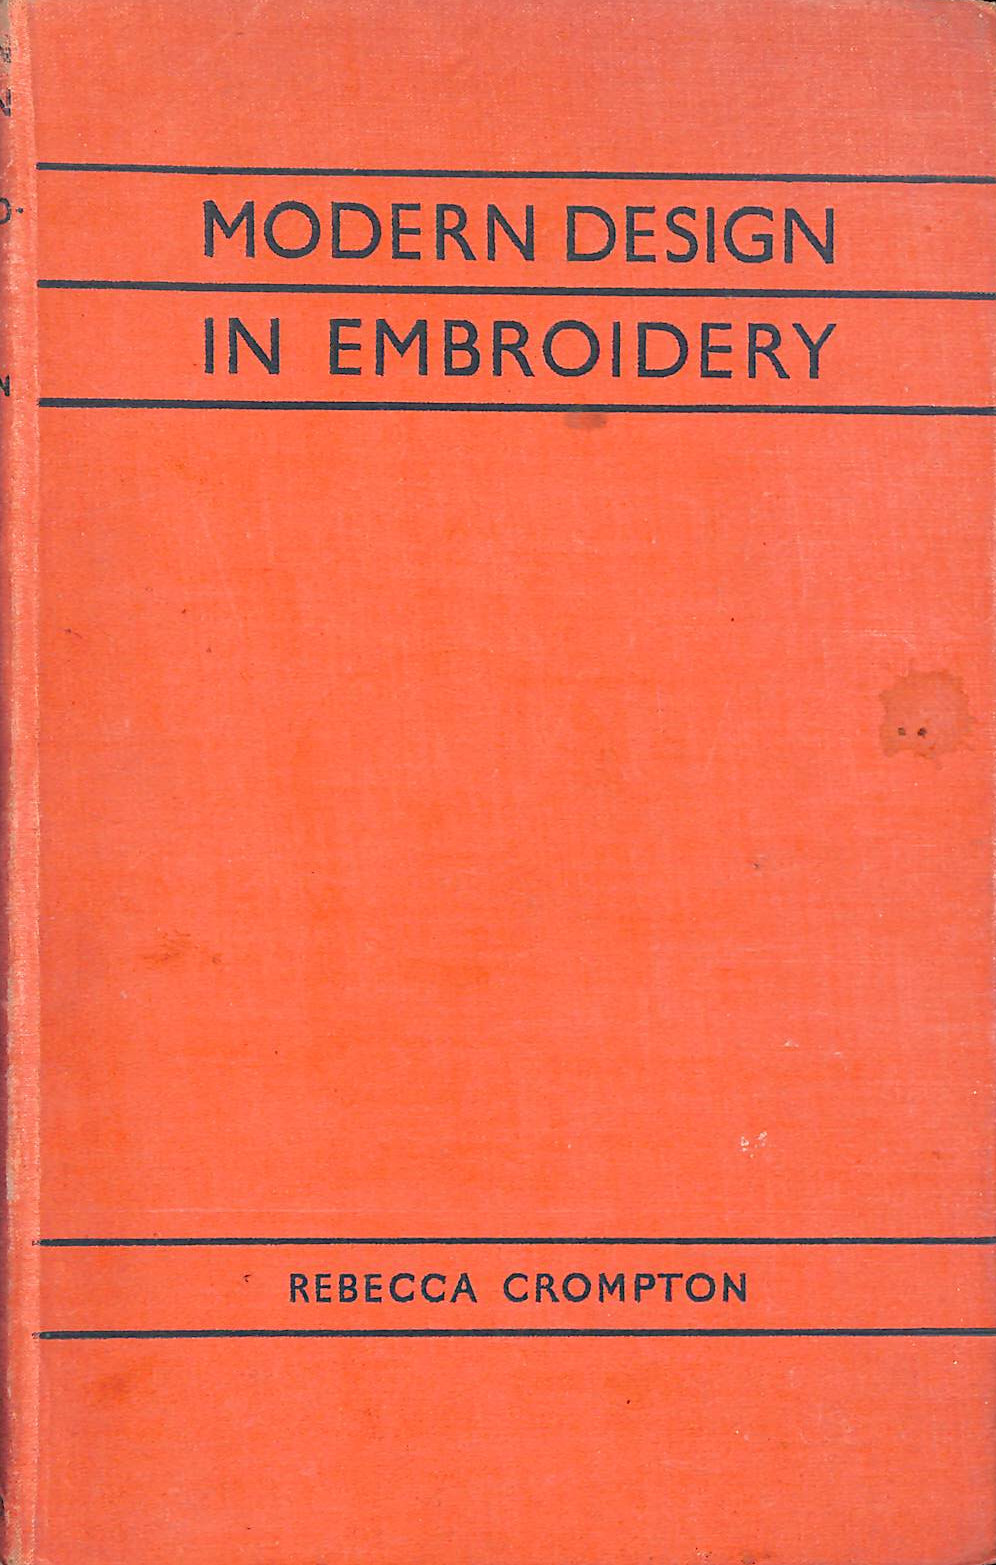 REBECCA CROMPTON; DAVIDE C. MINTER [EDITOR] - Modern Design In Embroidery